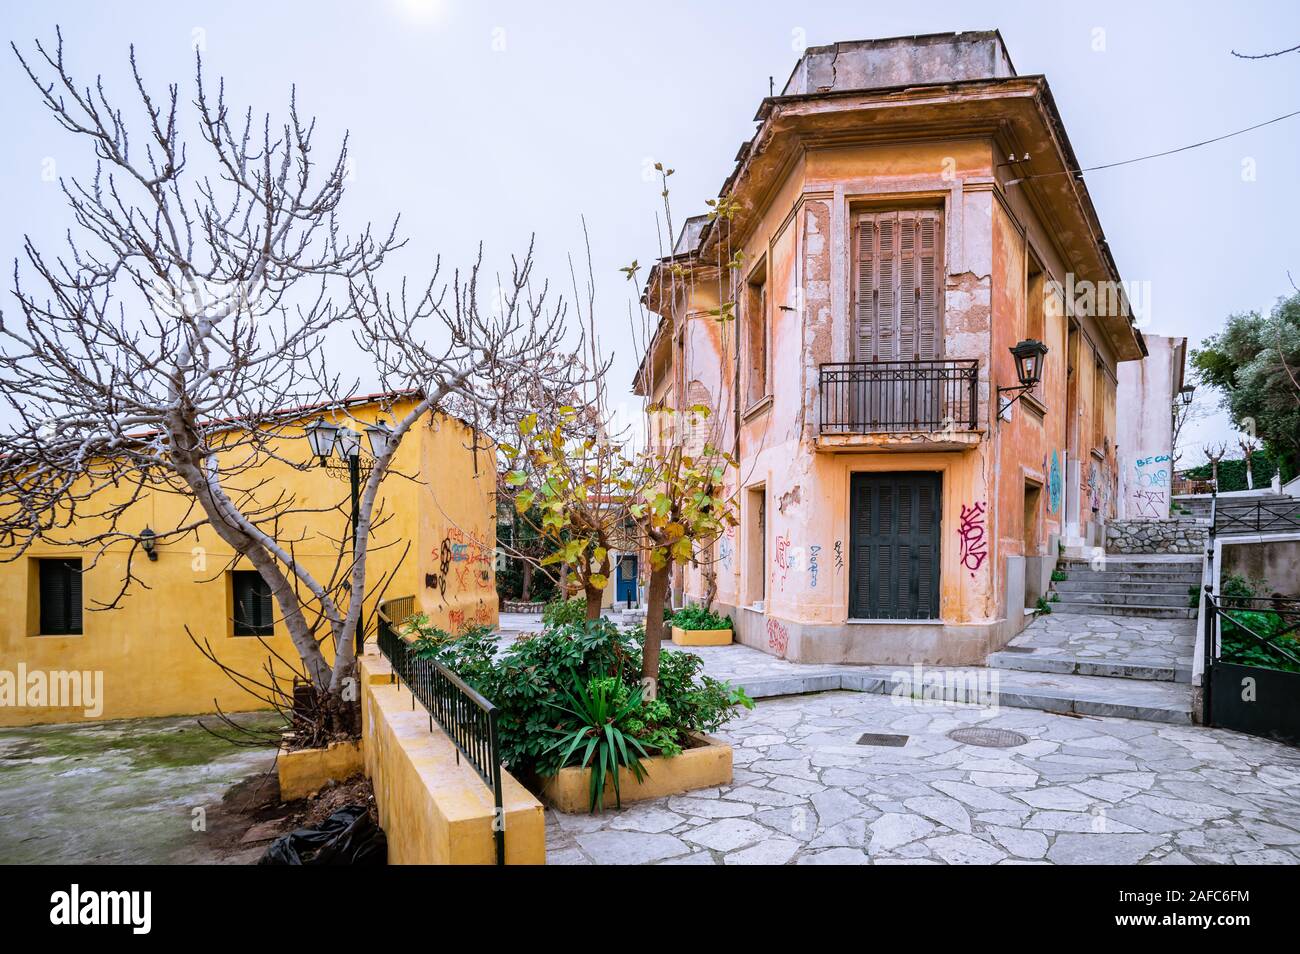 Athen/Griechenland - 1. Februar 2014: Blick auf das verlassene Haus mit Graffiti, in der historischen Nachbarschaft von Plaka. Stockfoto